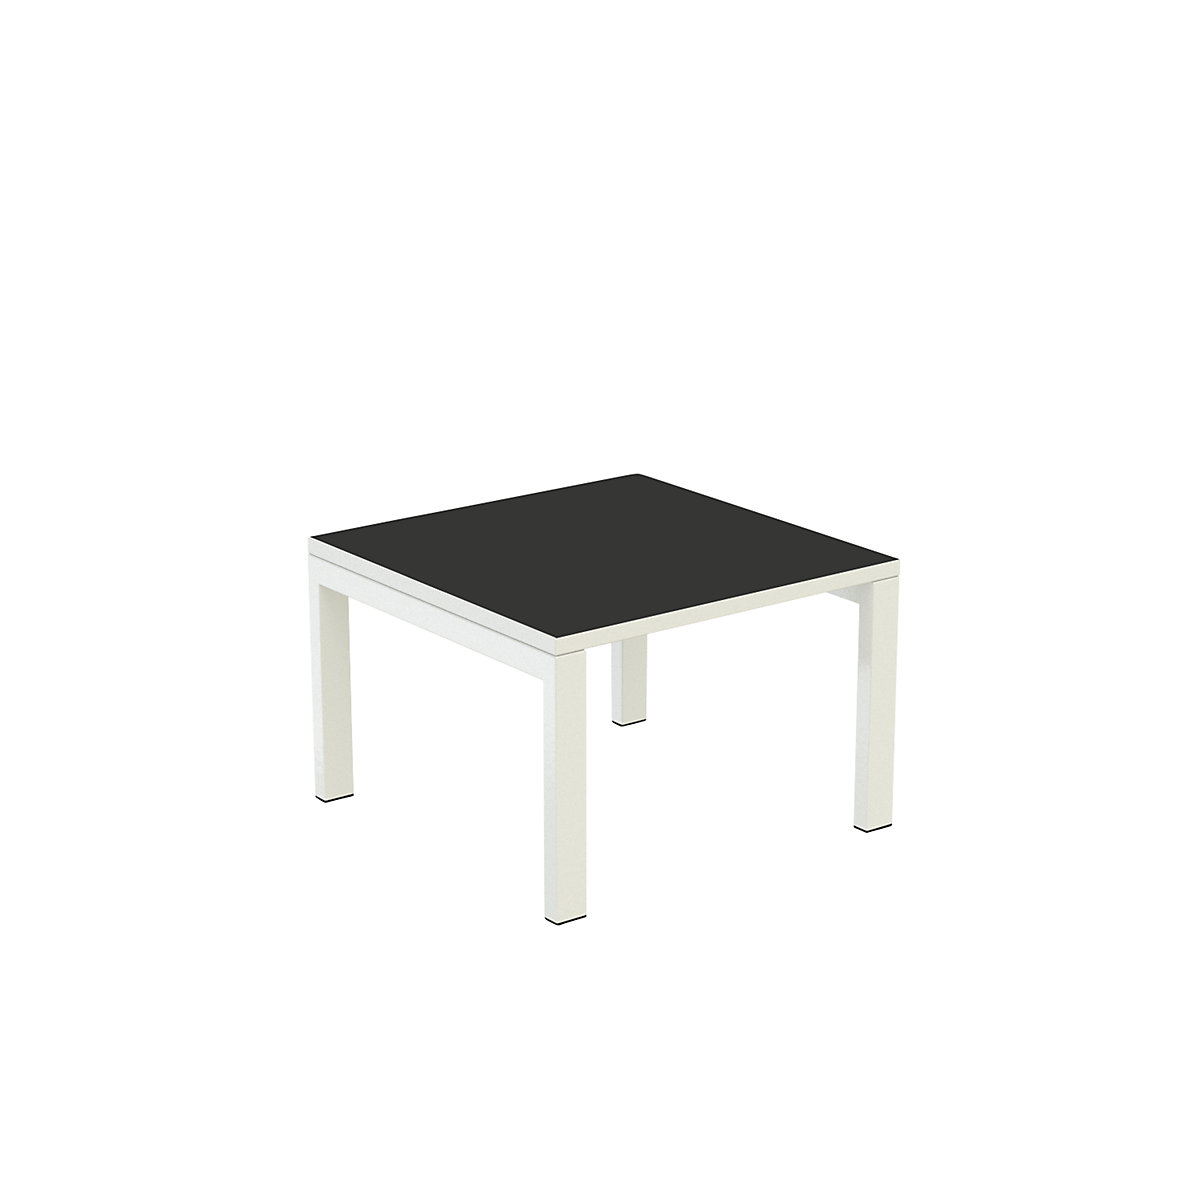 Stół dostawny easyDesk® – Paperflow, wys. x szer. x głęb. 400 x 600 x 600 mm, czarny-9